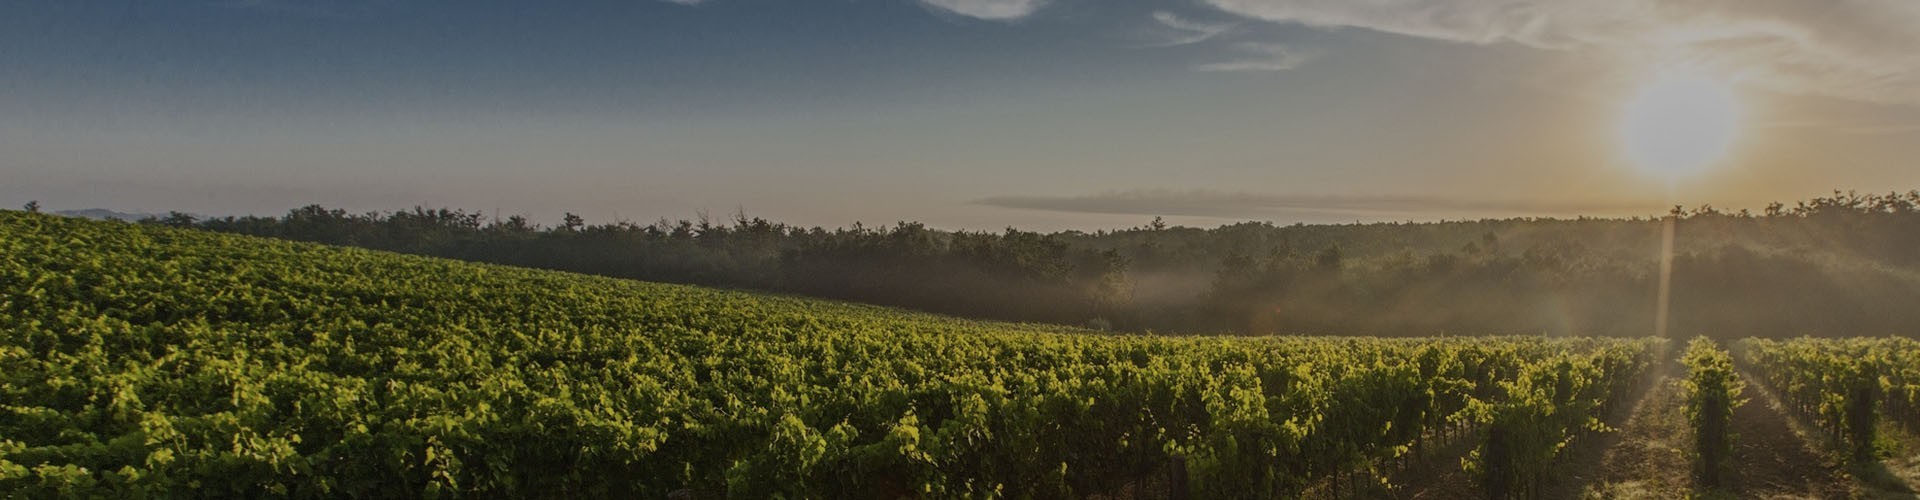 Comprar vinos Rioja | Bodegas Najerilla • Tienda online